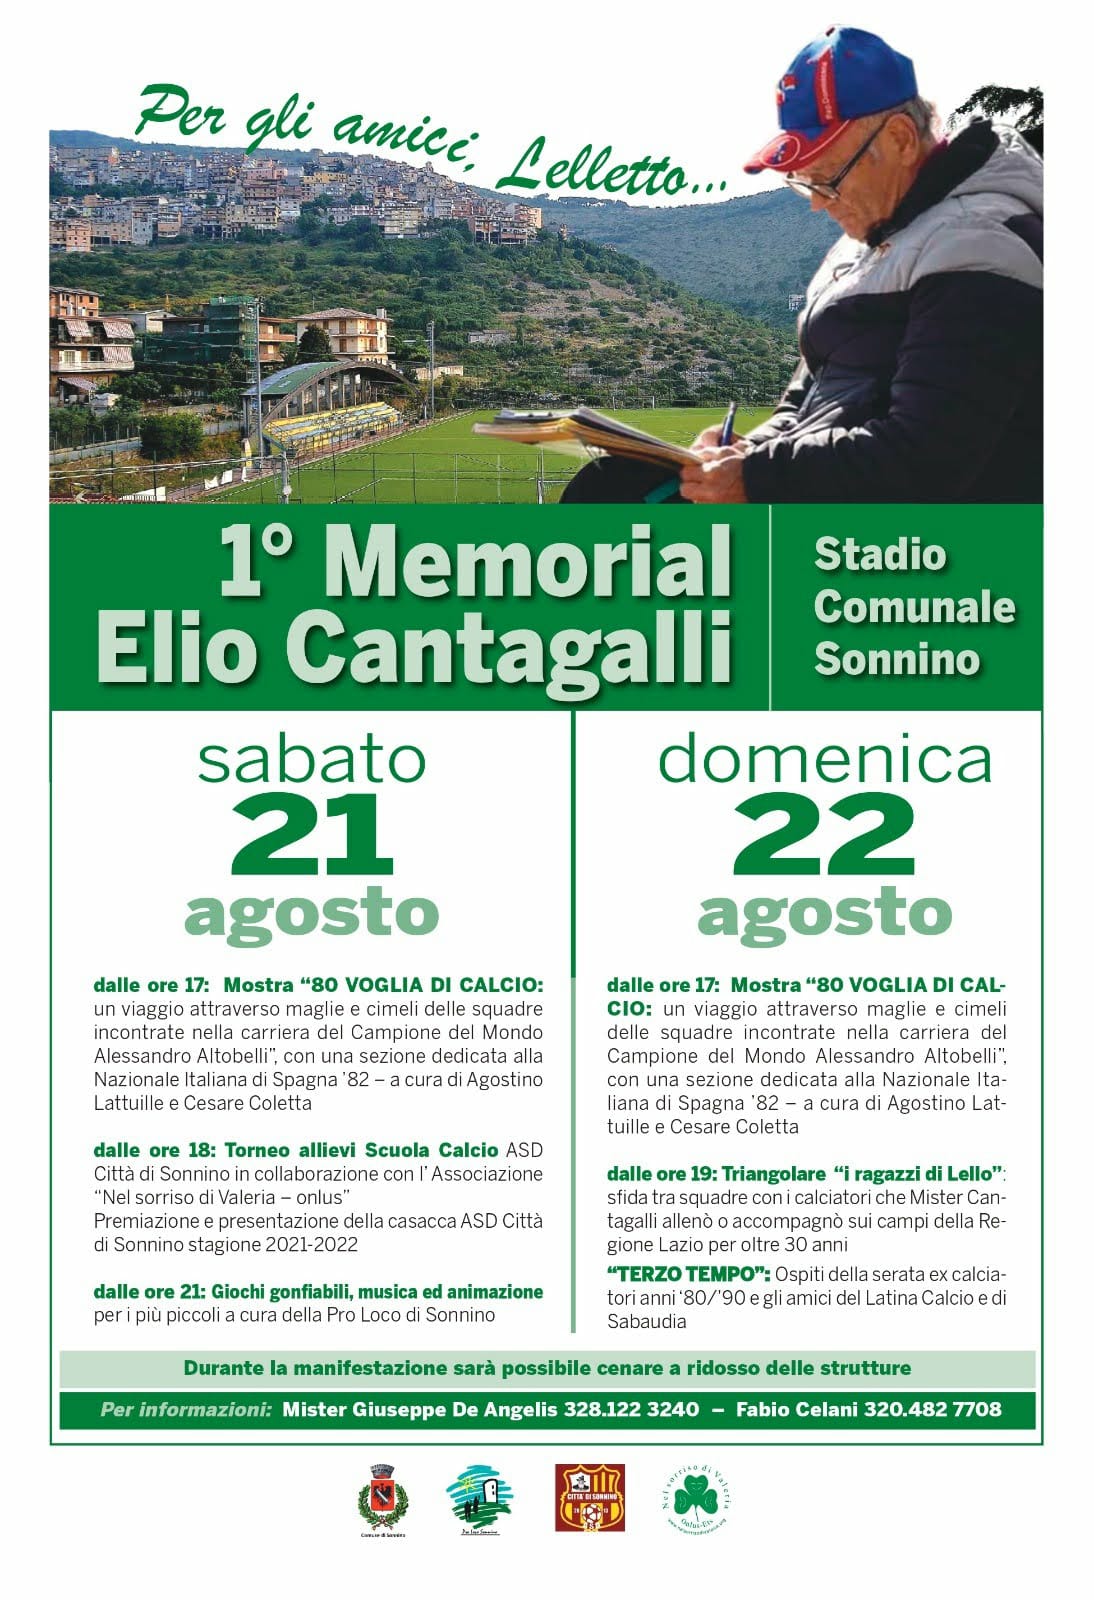 Memorial Elio Cantagalli